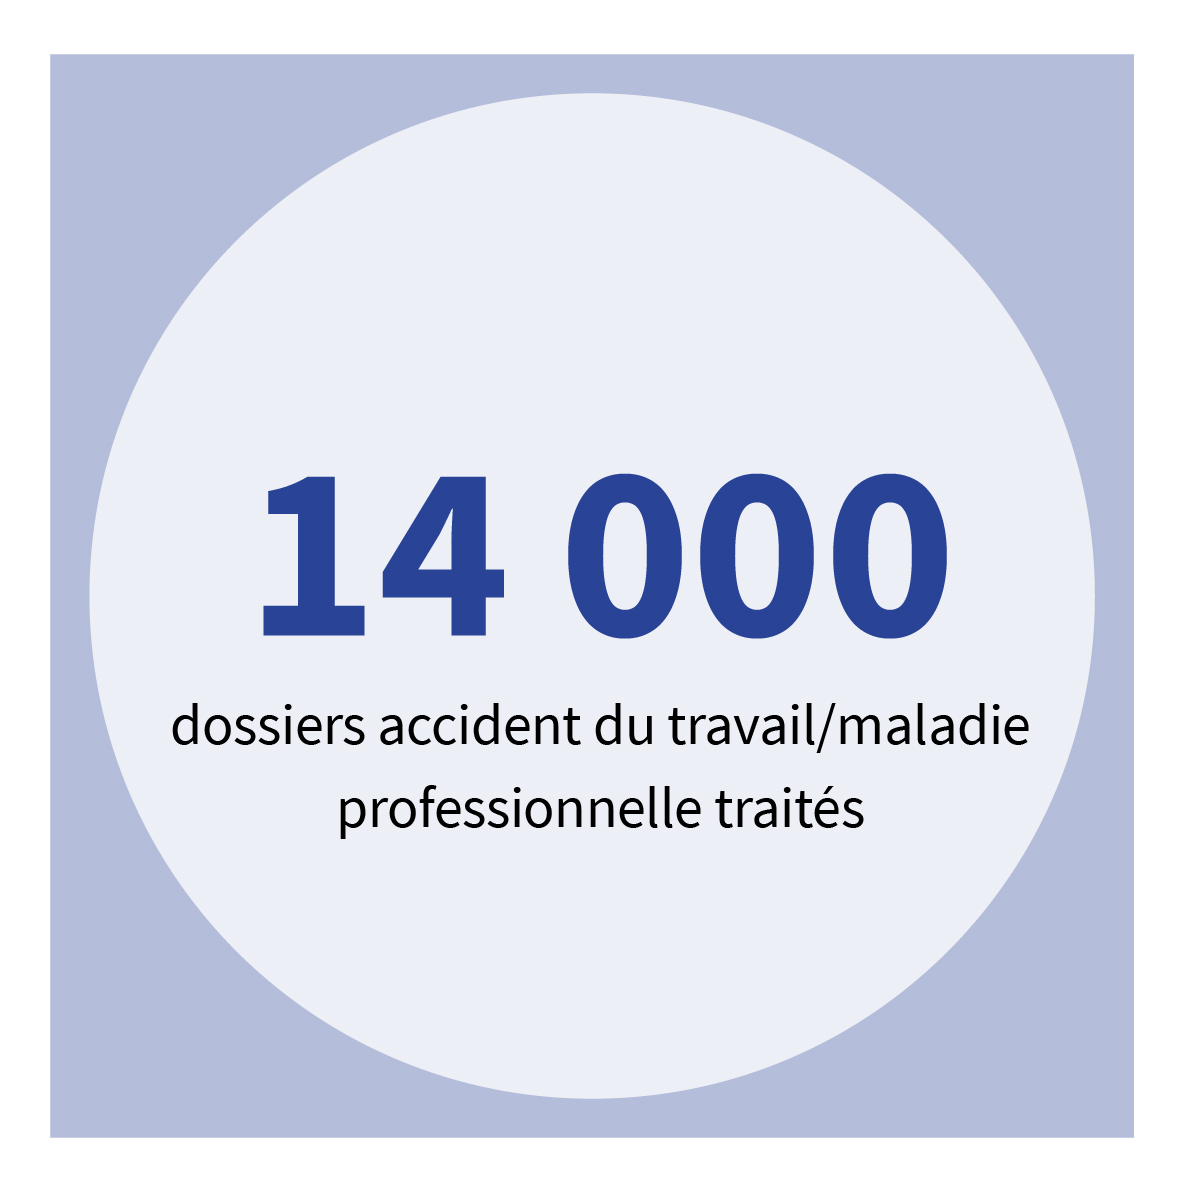 14 000 dossiers accident du travail/maladie professionnelle traités.